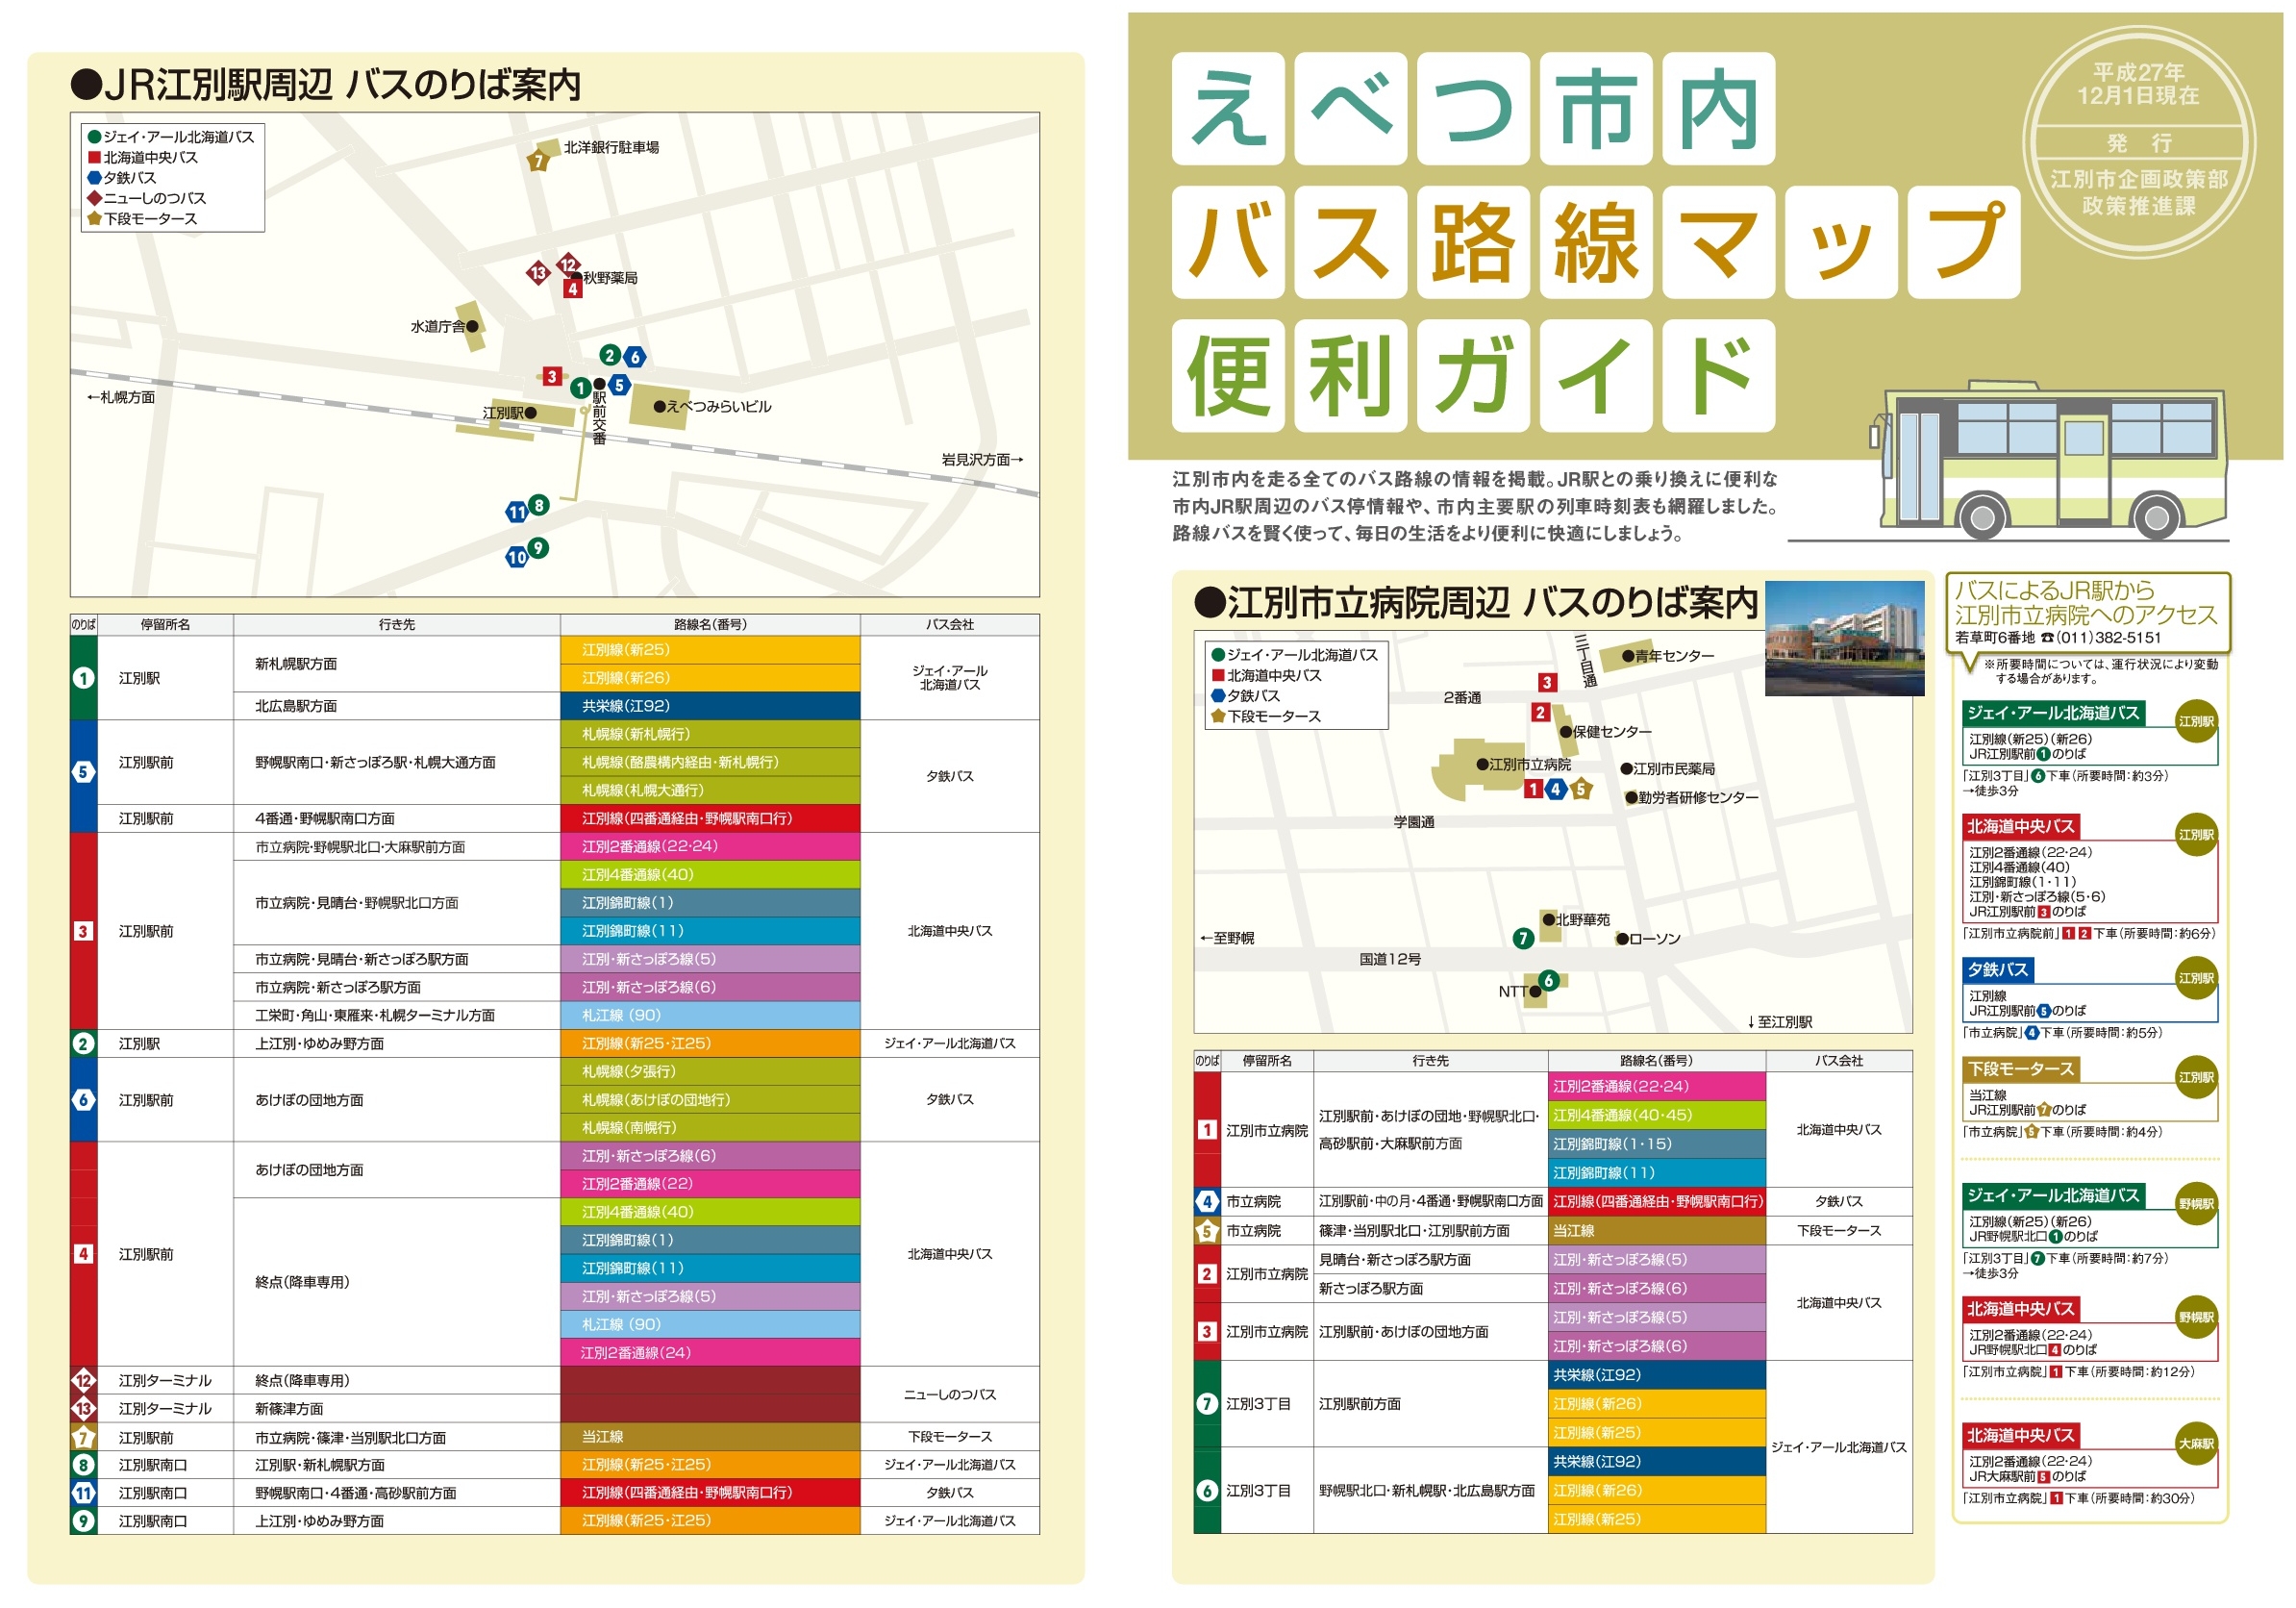 江別市内路線バス 路線図 時刻表 えべナビ 江別 野幌 情報ナビ